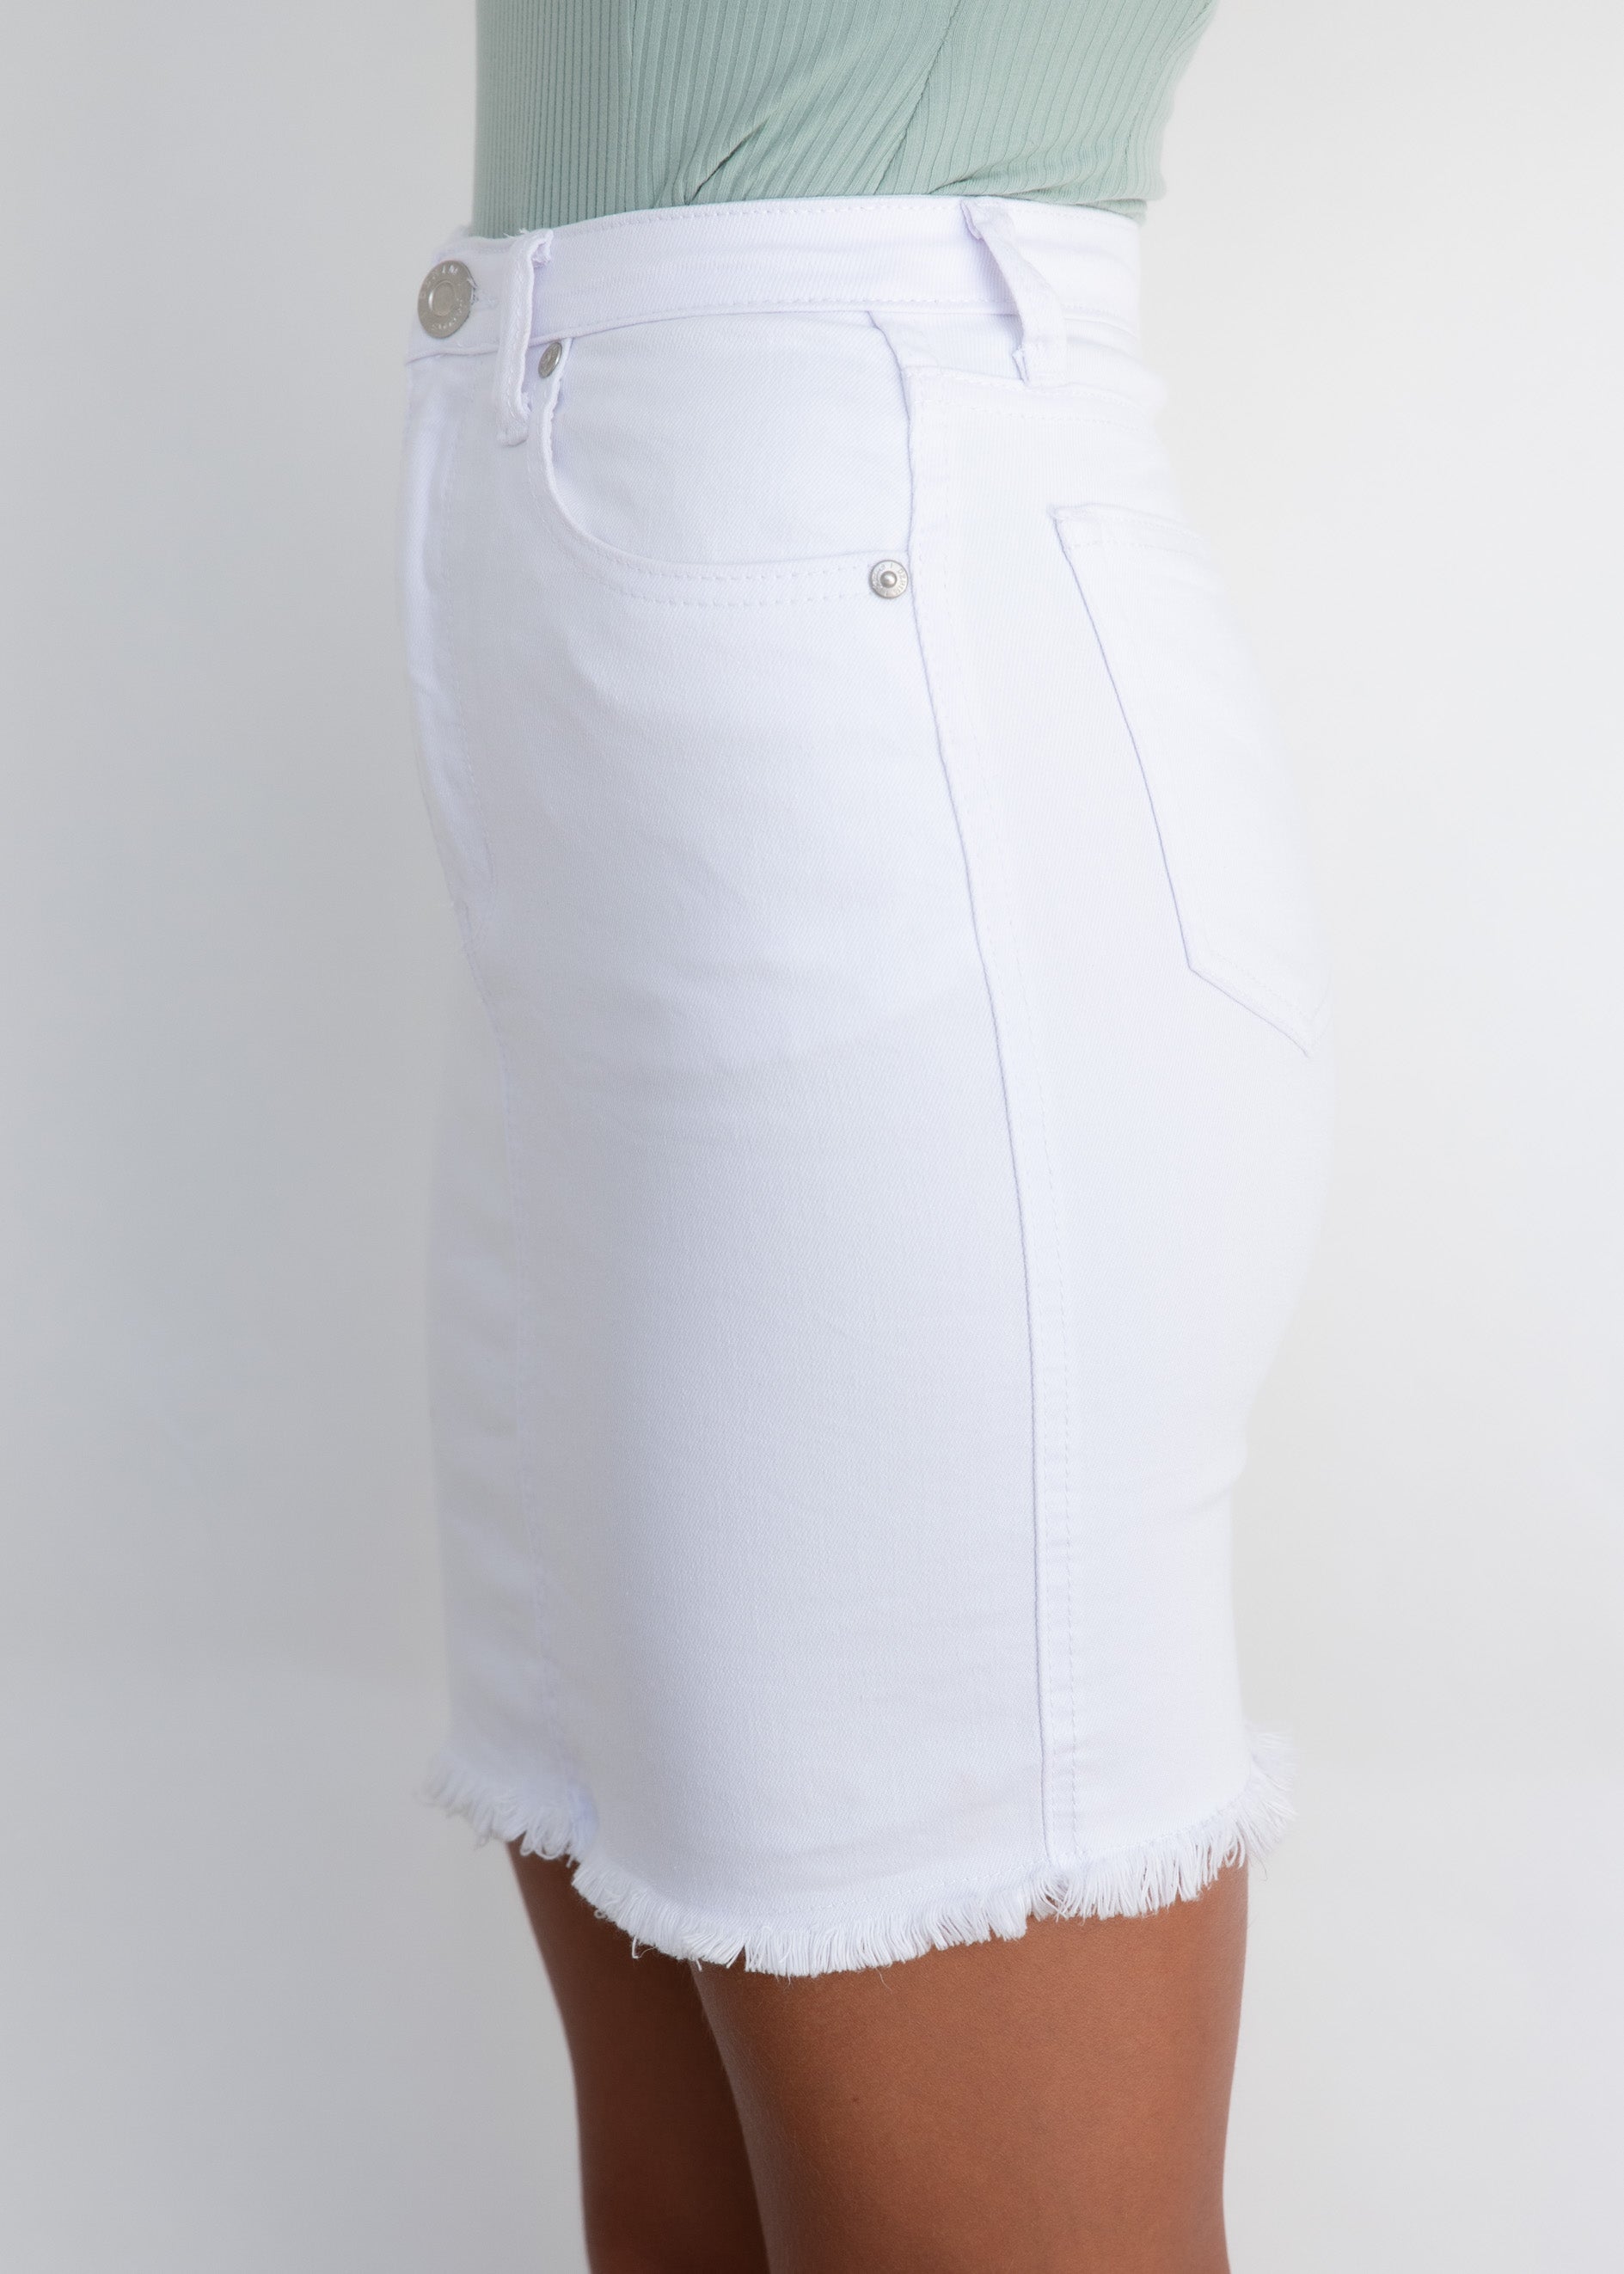 Travel Trends Skirt - White